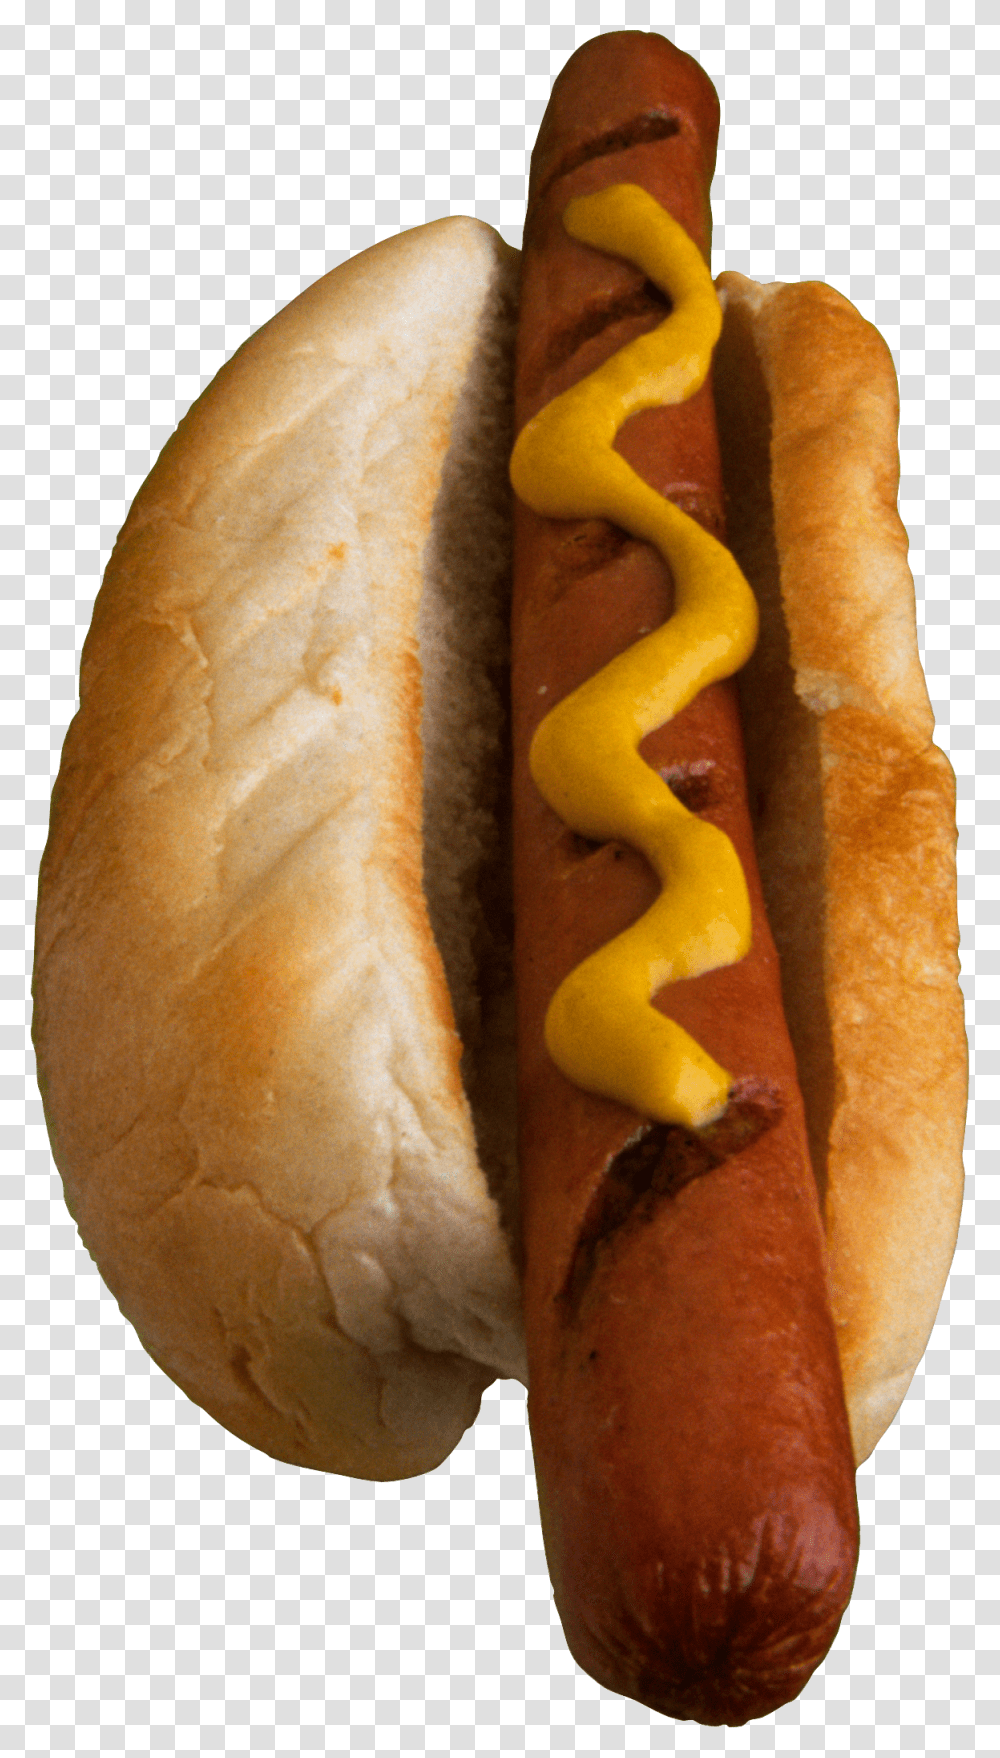 Hot Dog, Food, Bread, Bun Transparent Png